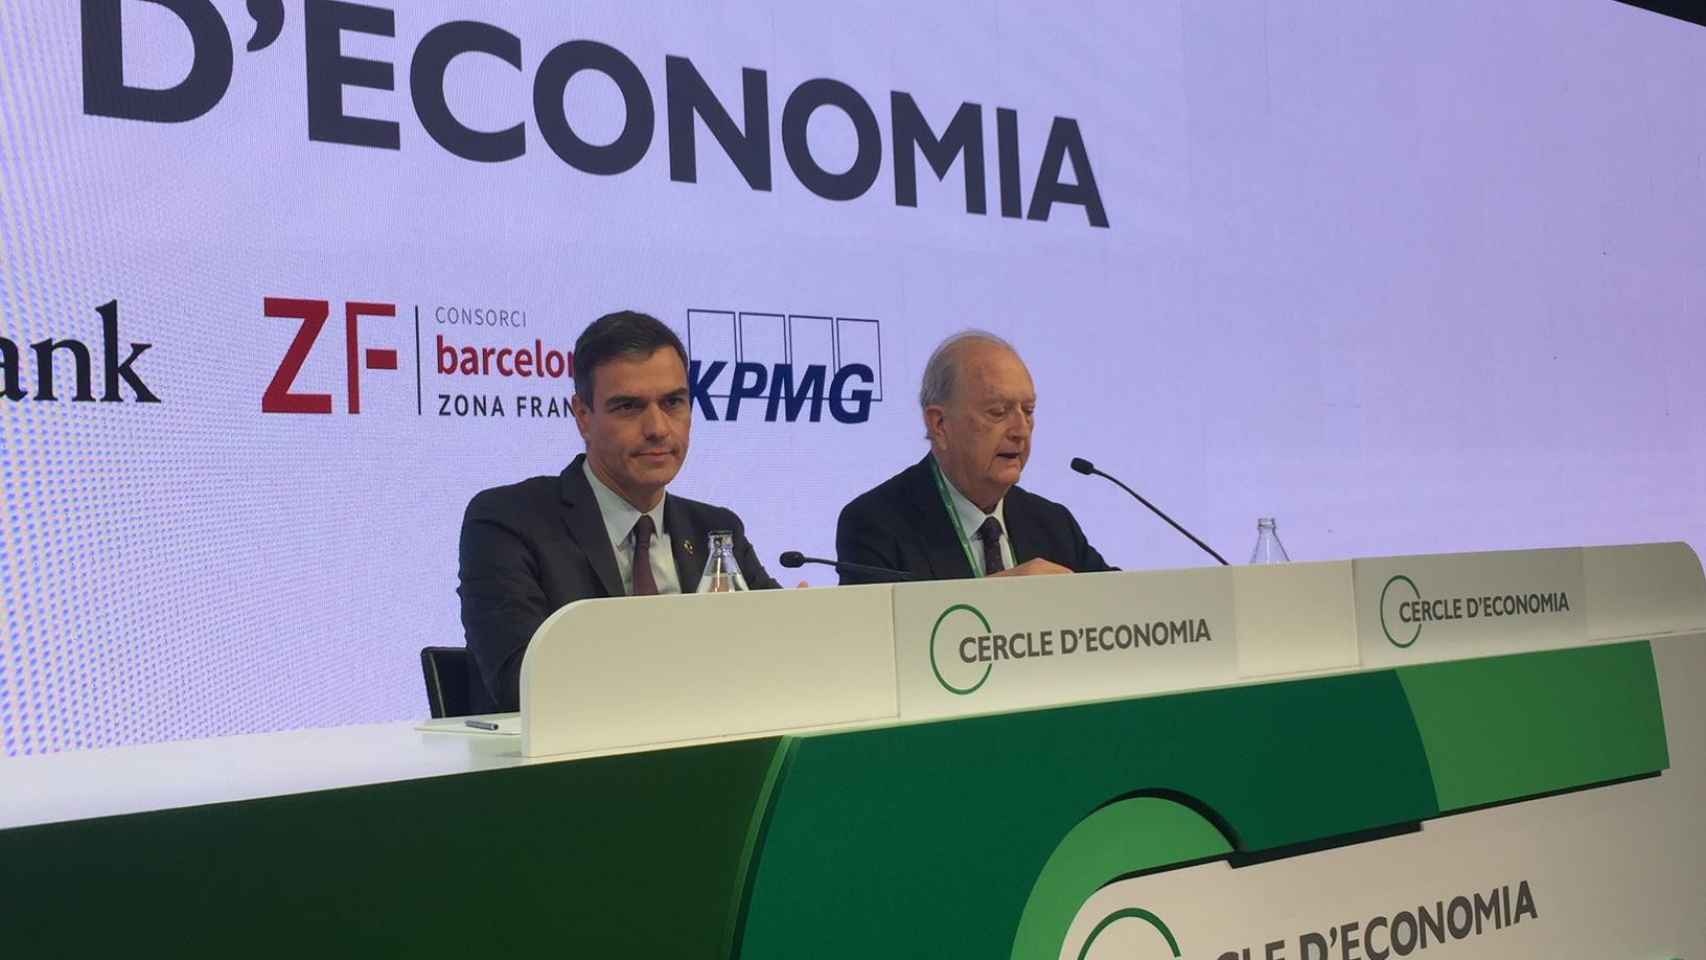 El presidente del Gobierno, Pedro Sánchez, en las jornadas económicas del Círculo de Economía, junto a Juan José Brugera /CG